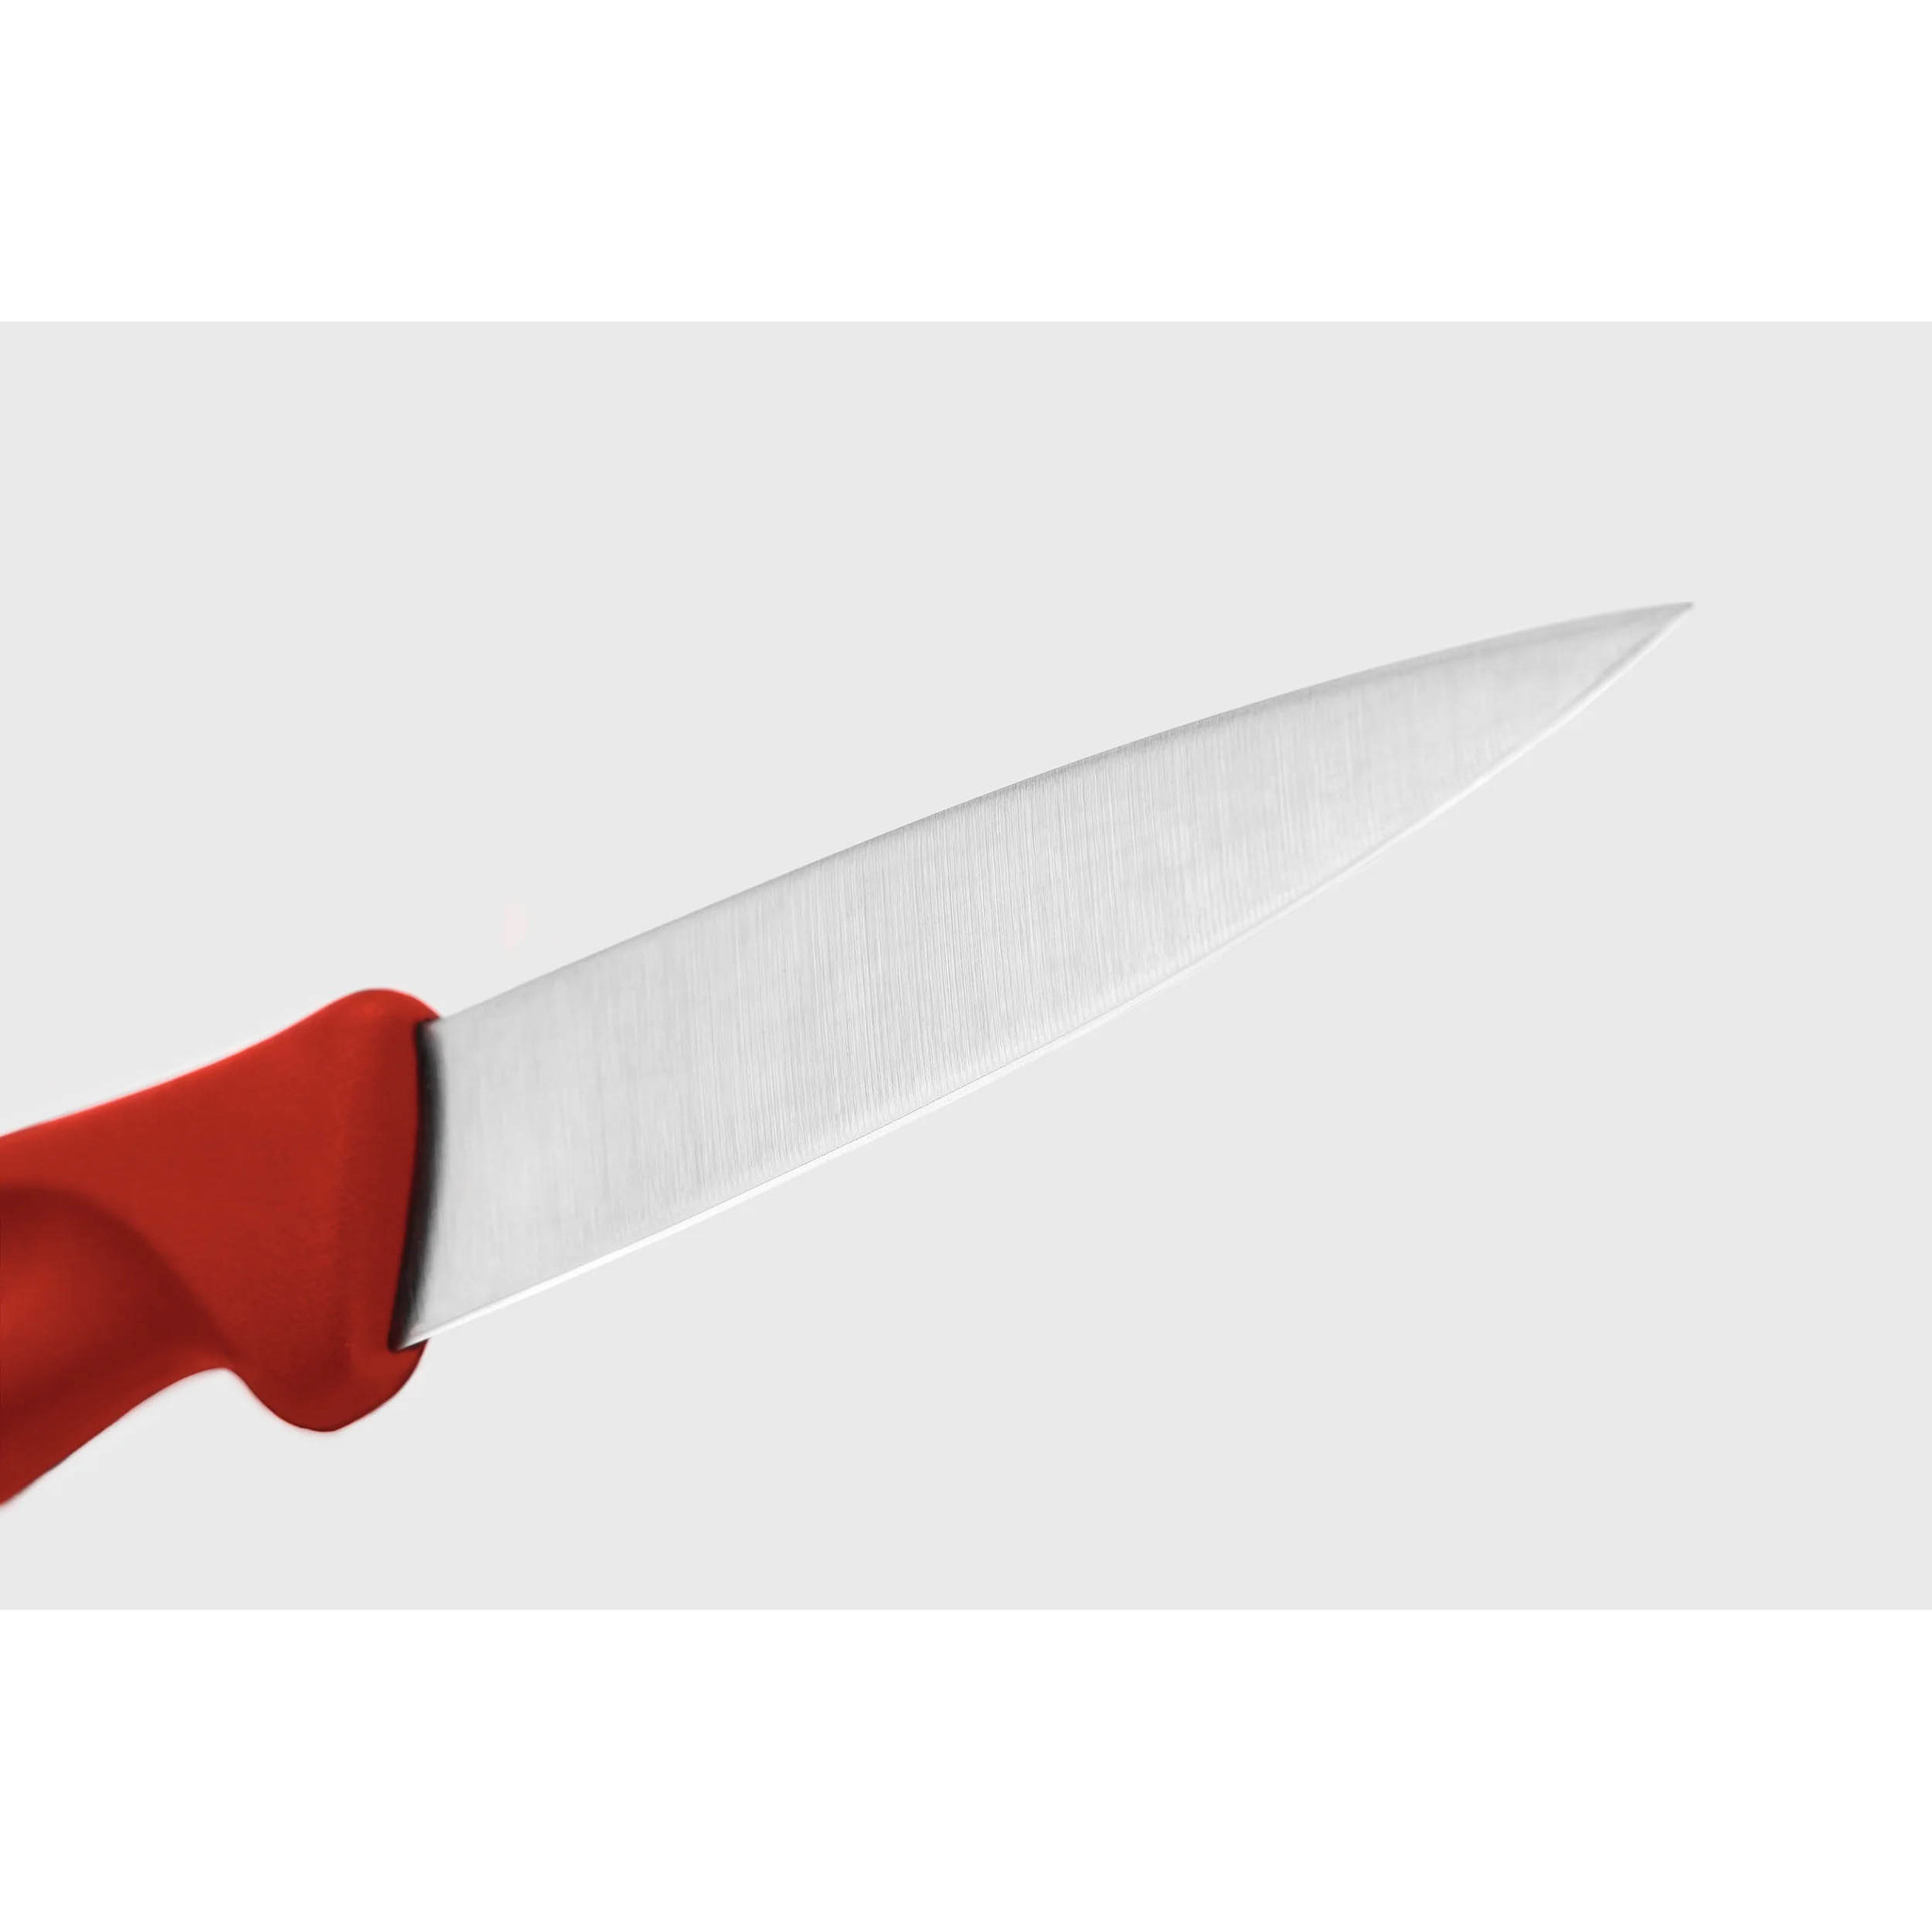 3 Inch Clip Point Paring Knife - Creative Kitchen Fargo